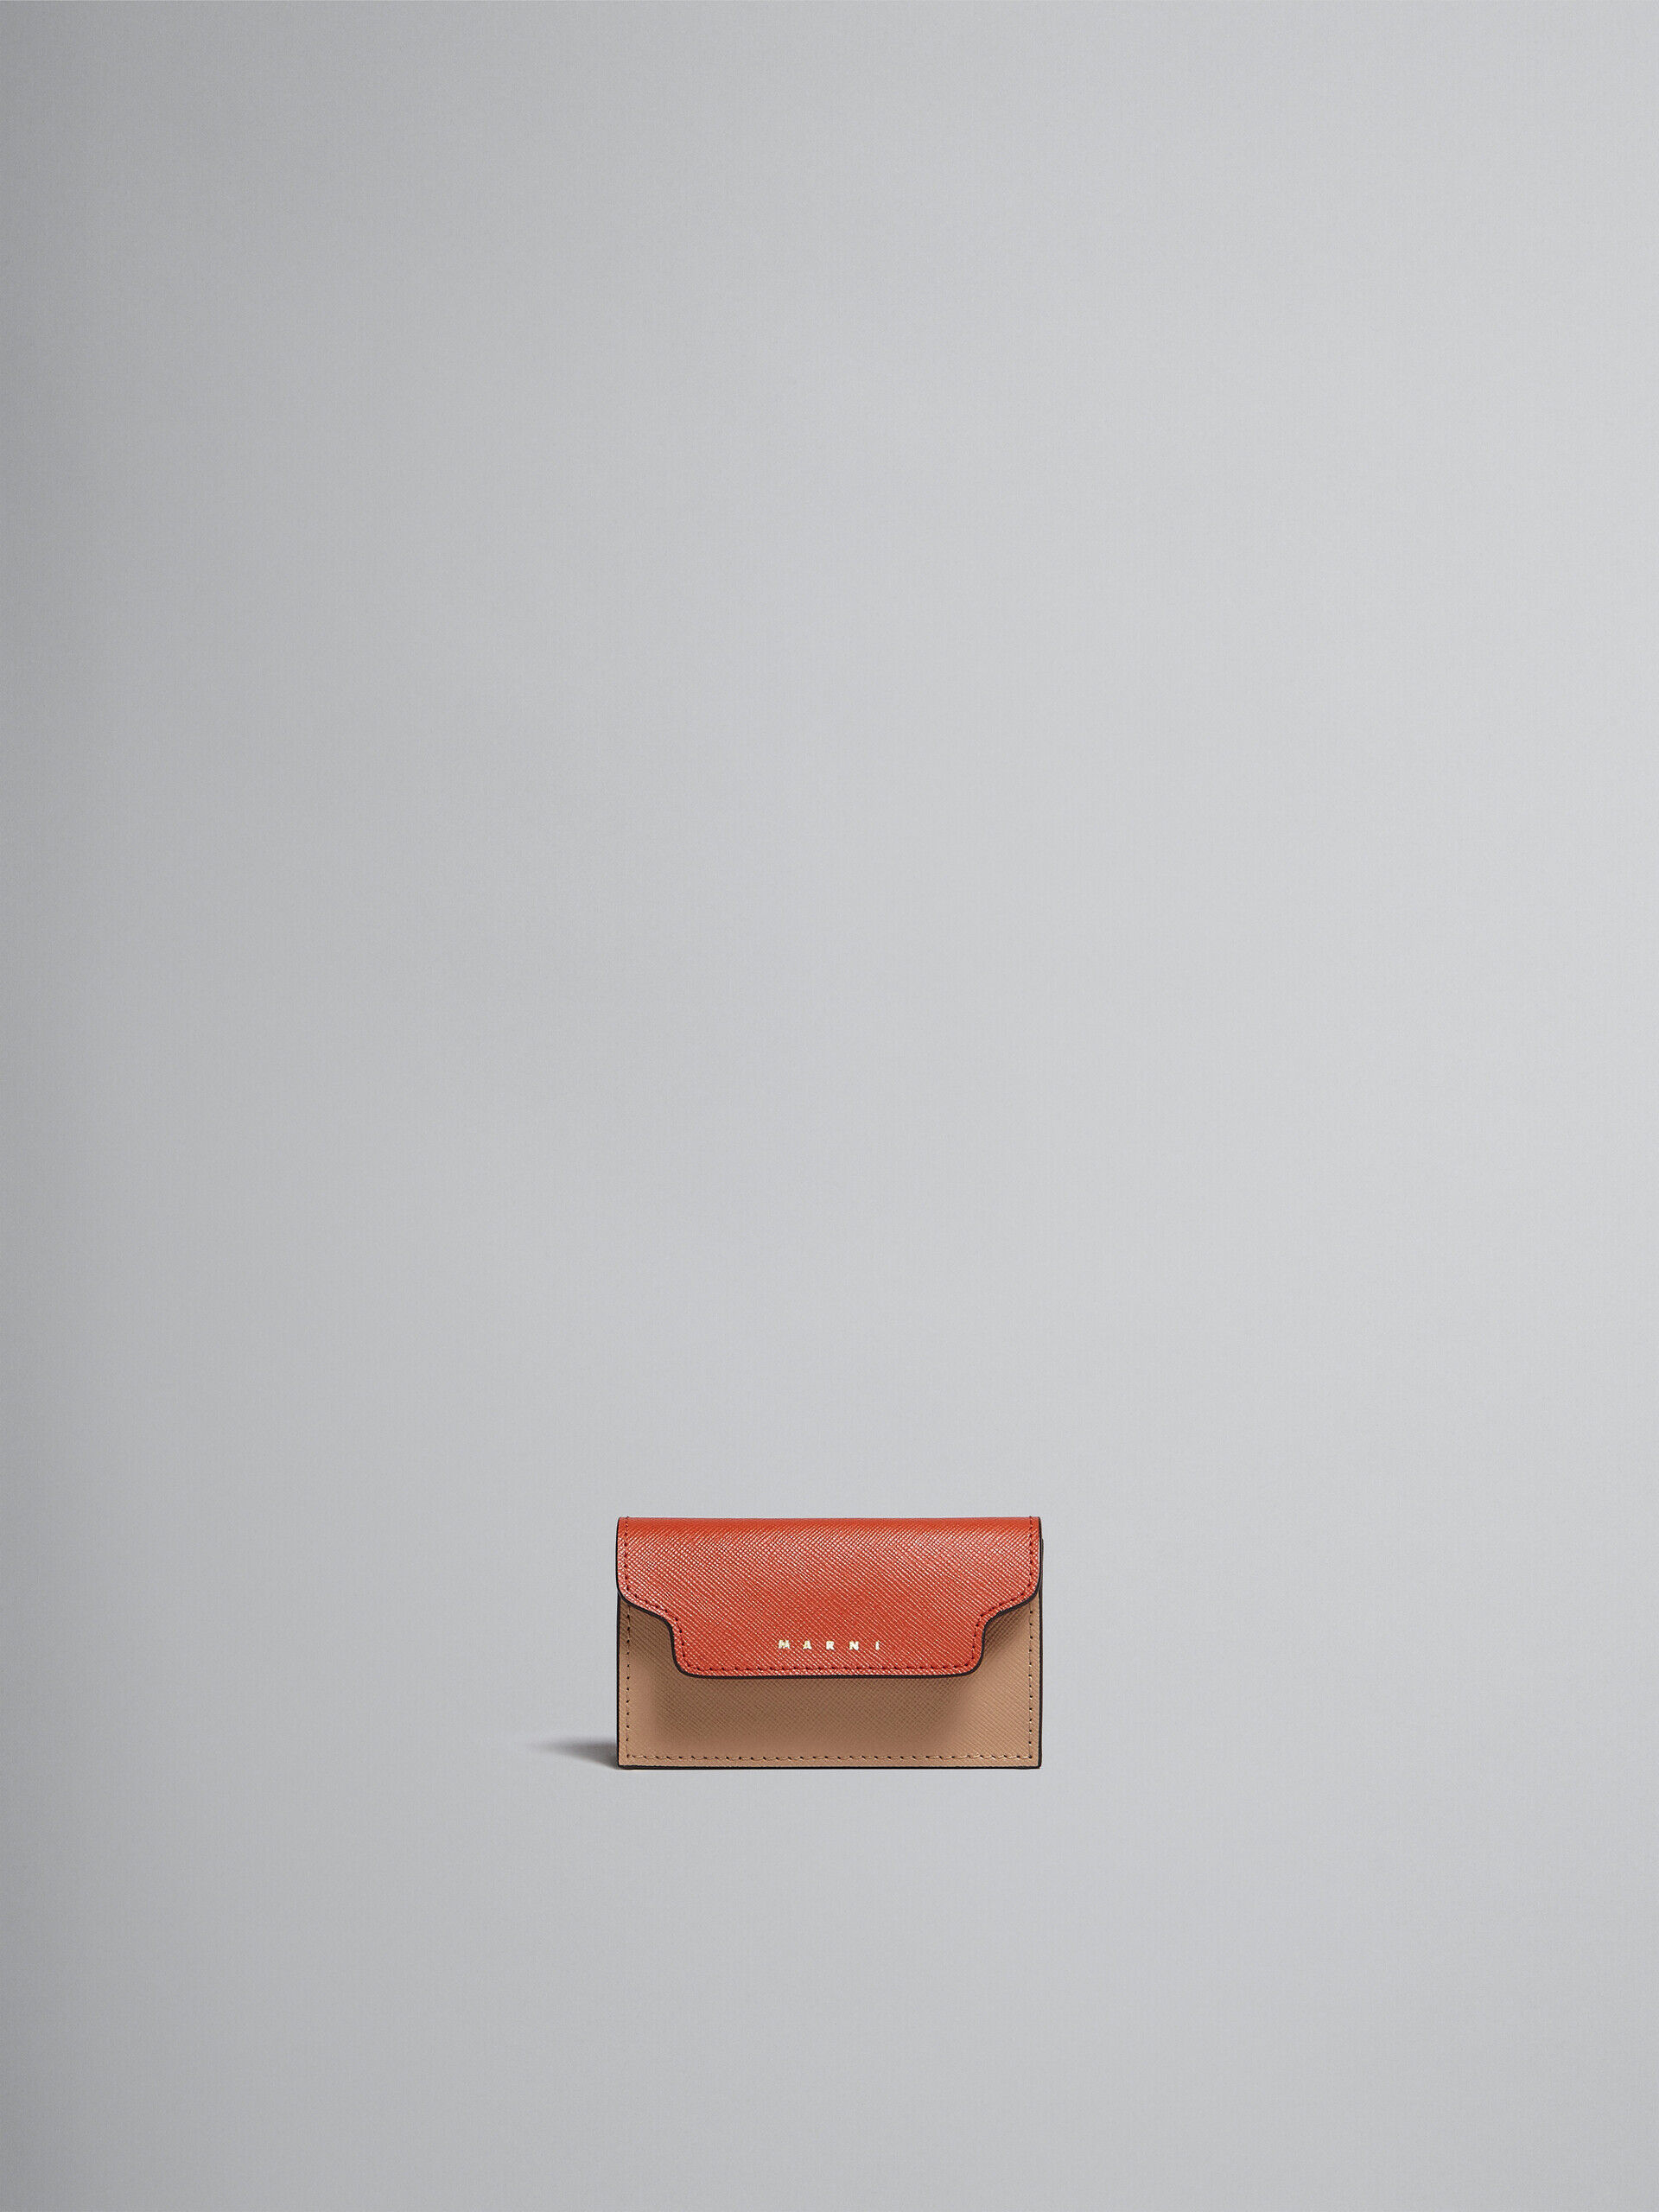 ブラウン マルチカラー サフィアーノレザー製ビジネスカードケース | Marni